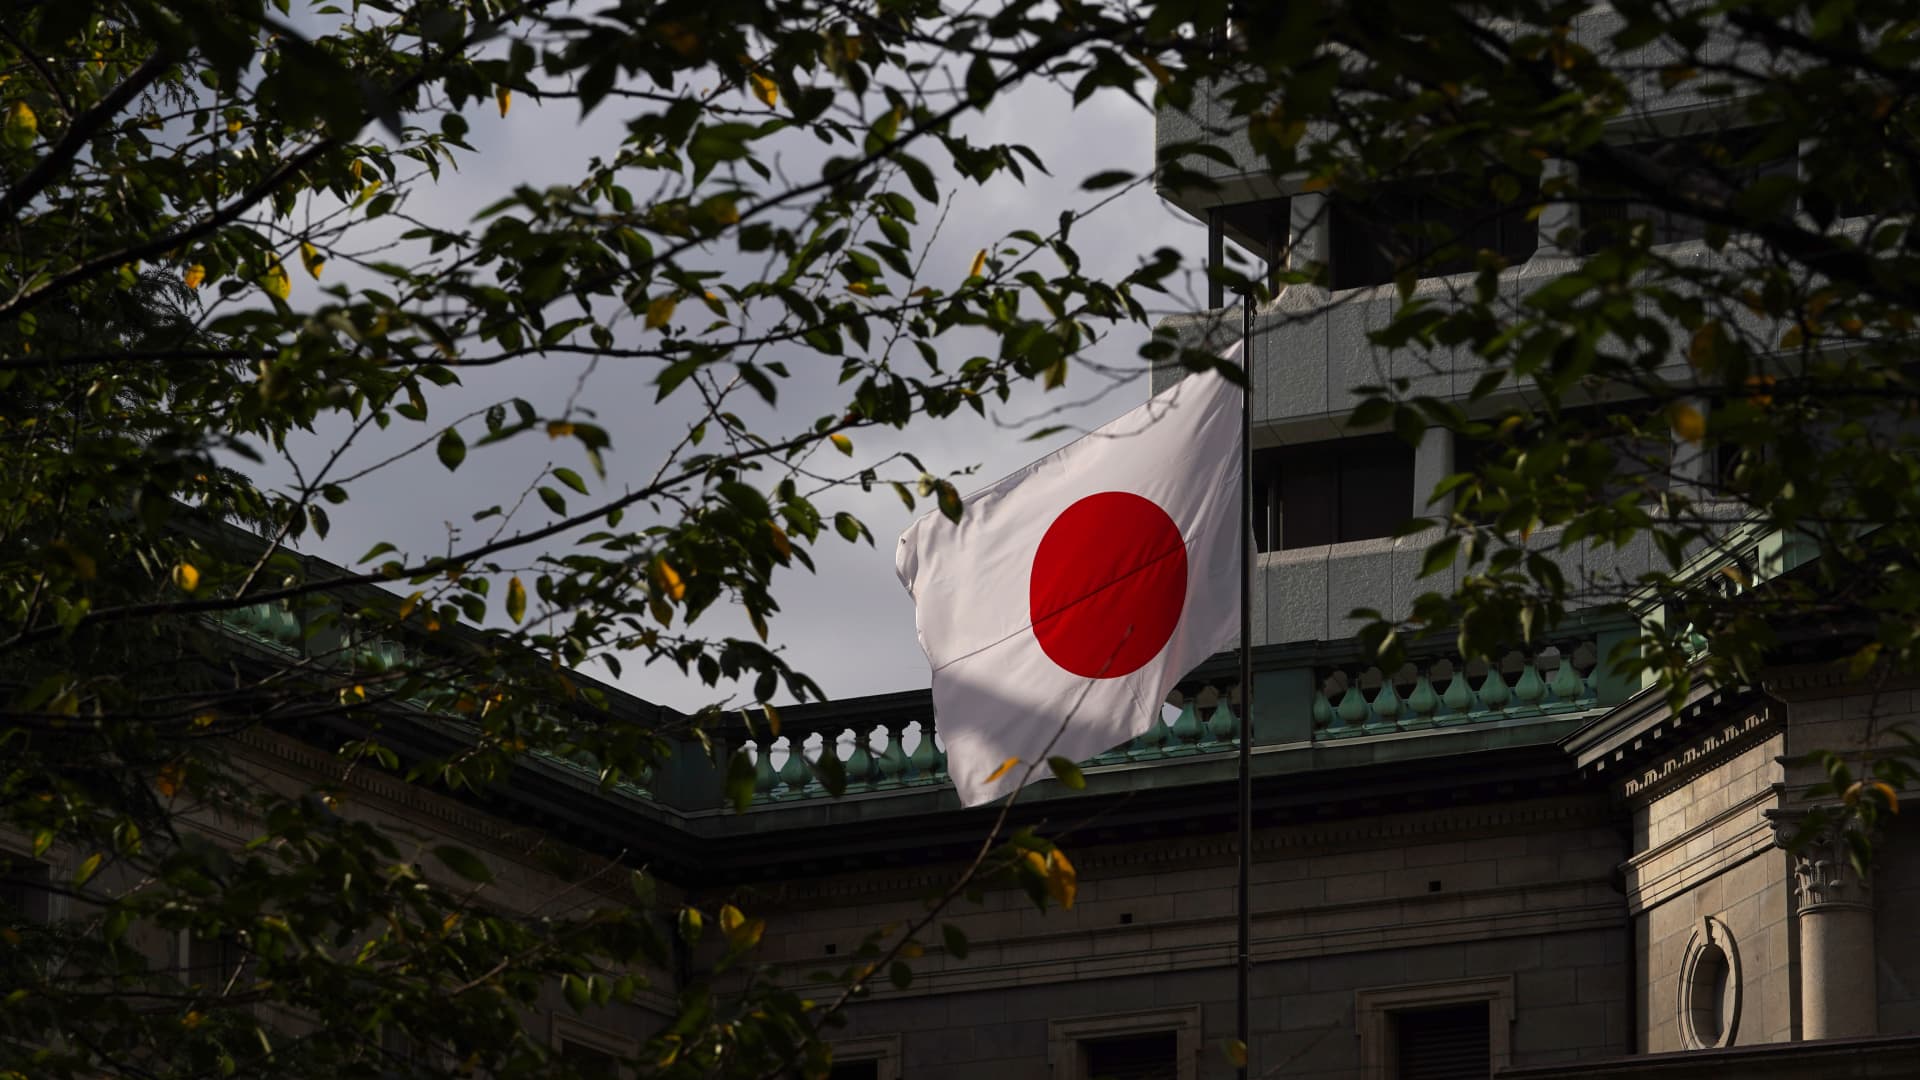 元副大臣は、円が対ドルで130円を超えると、日本銀行は「懸念」されるだろうと述べた。